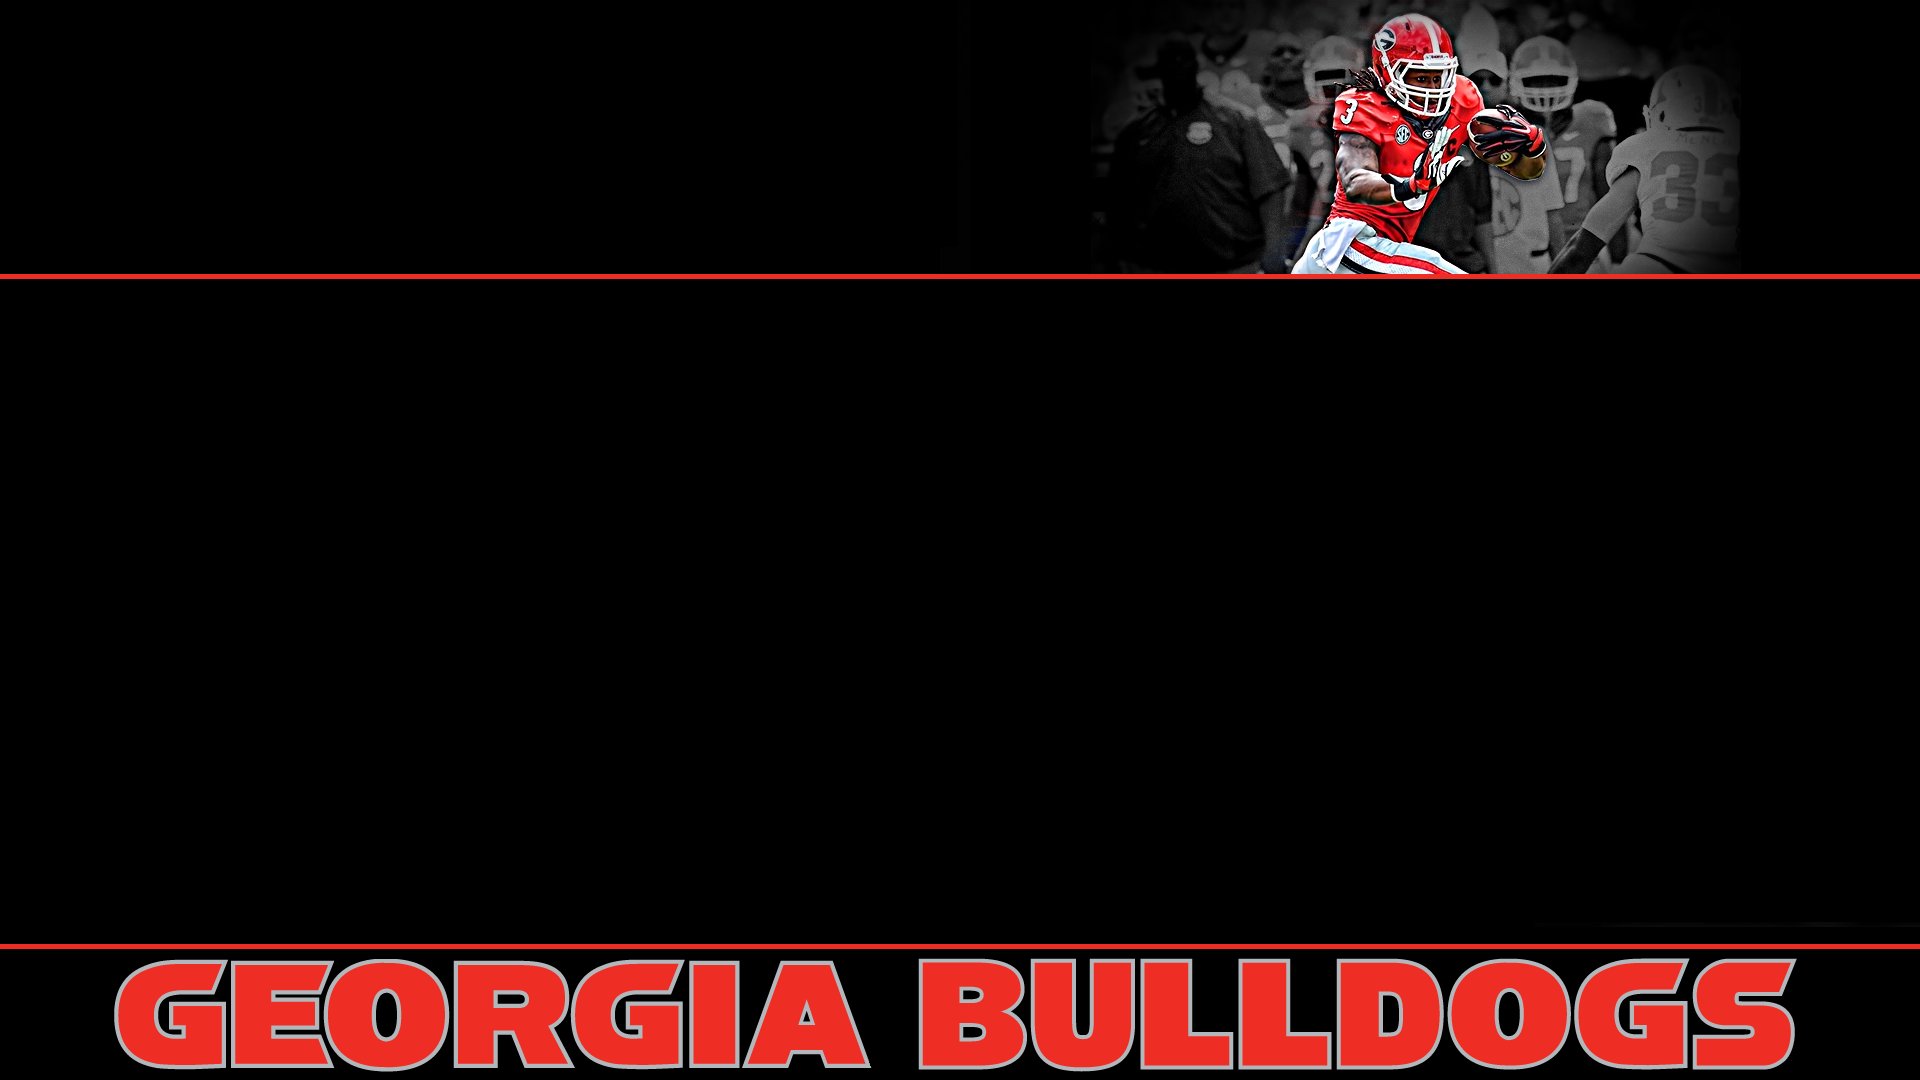 Georgia Bulldogs Wallpapers  Top 35 Best Georgia Bulldogs Wallpapers  Download